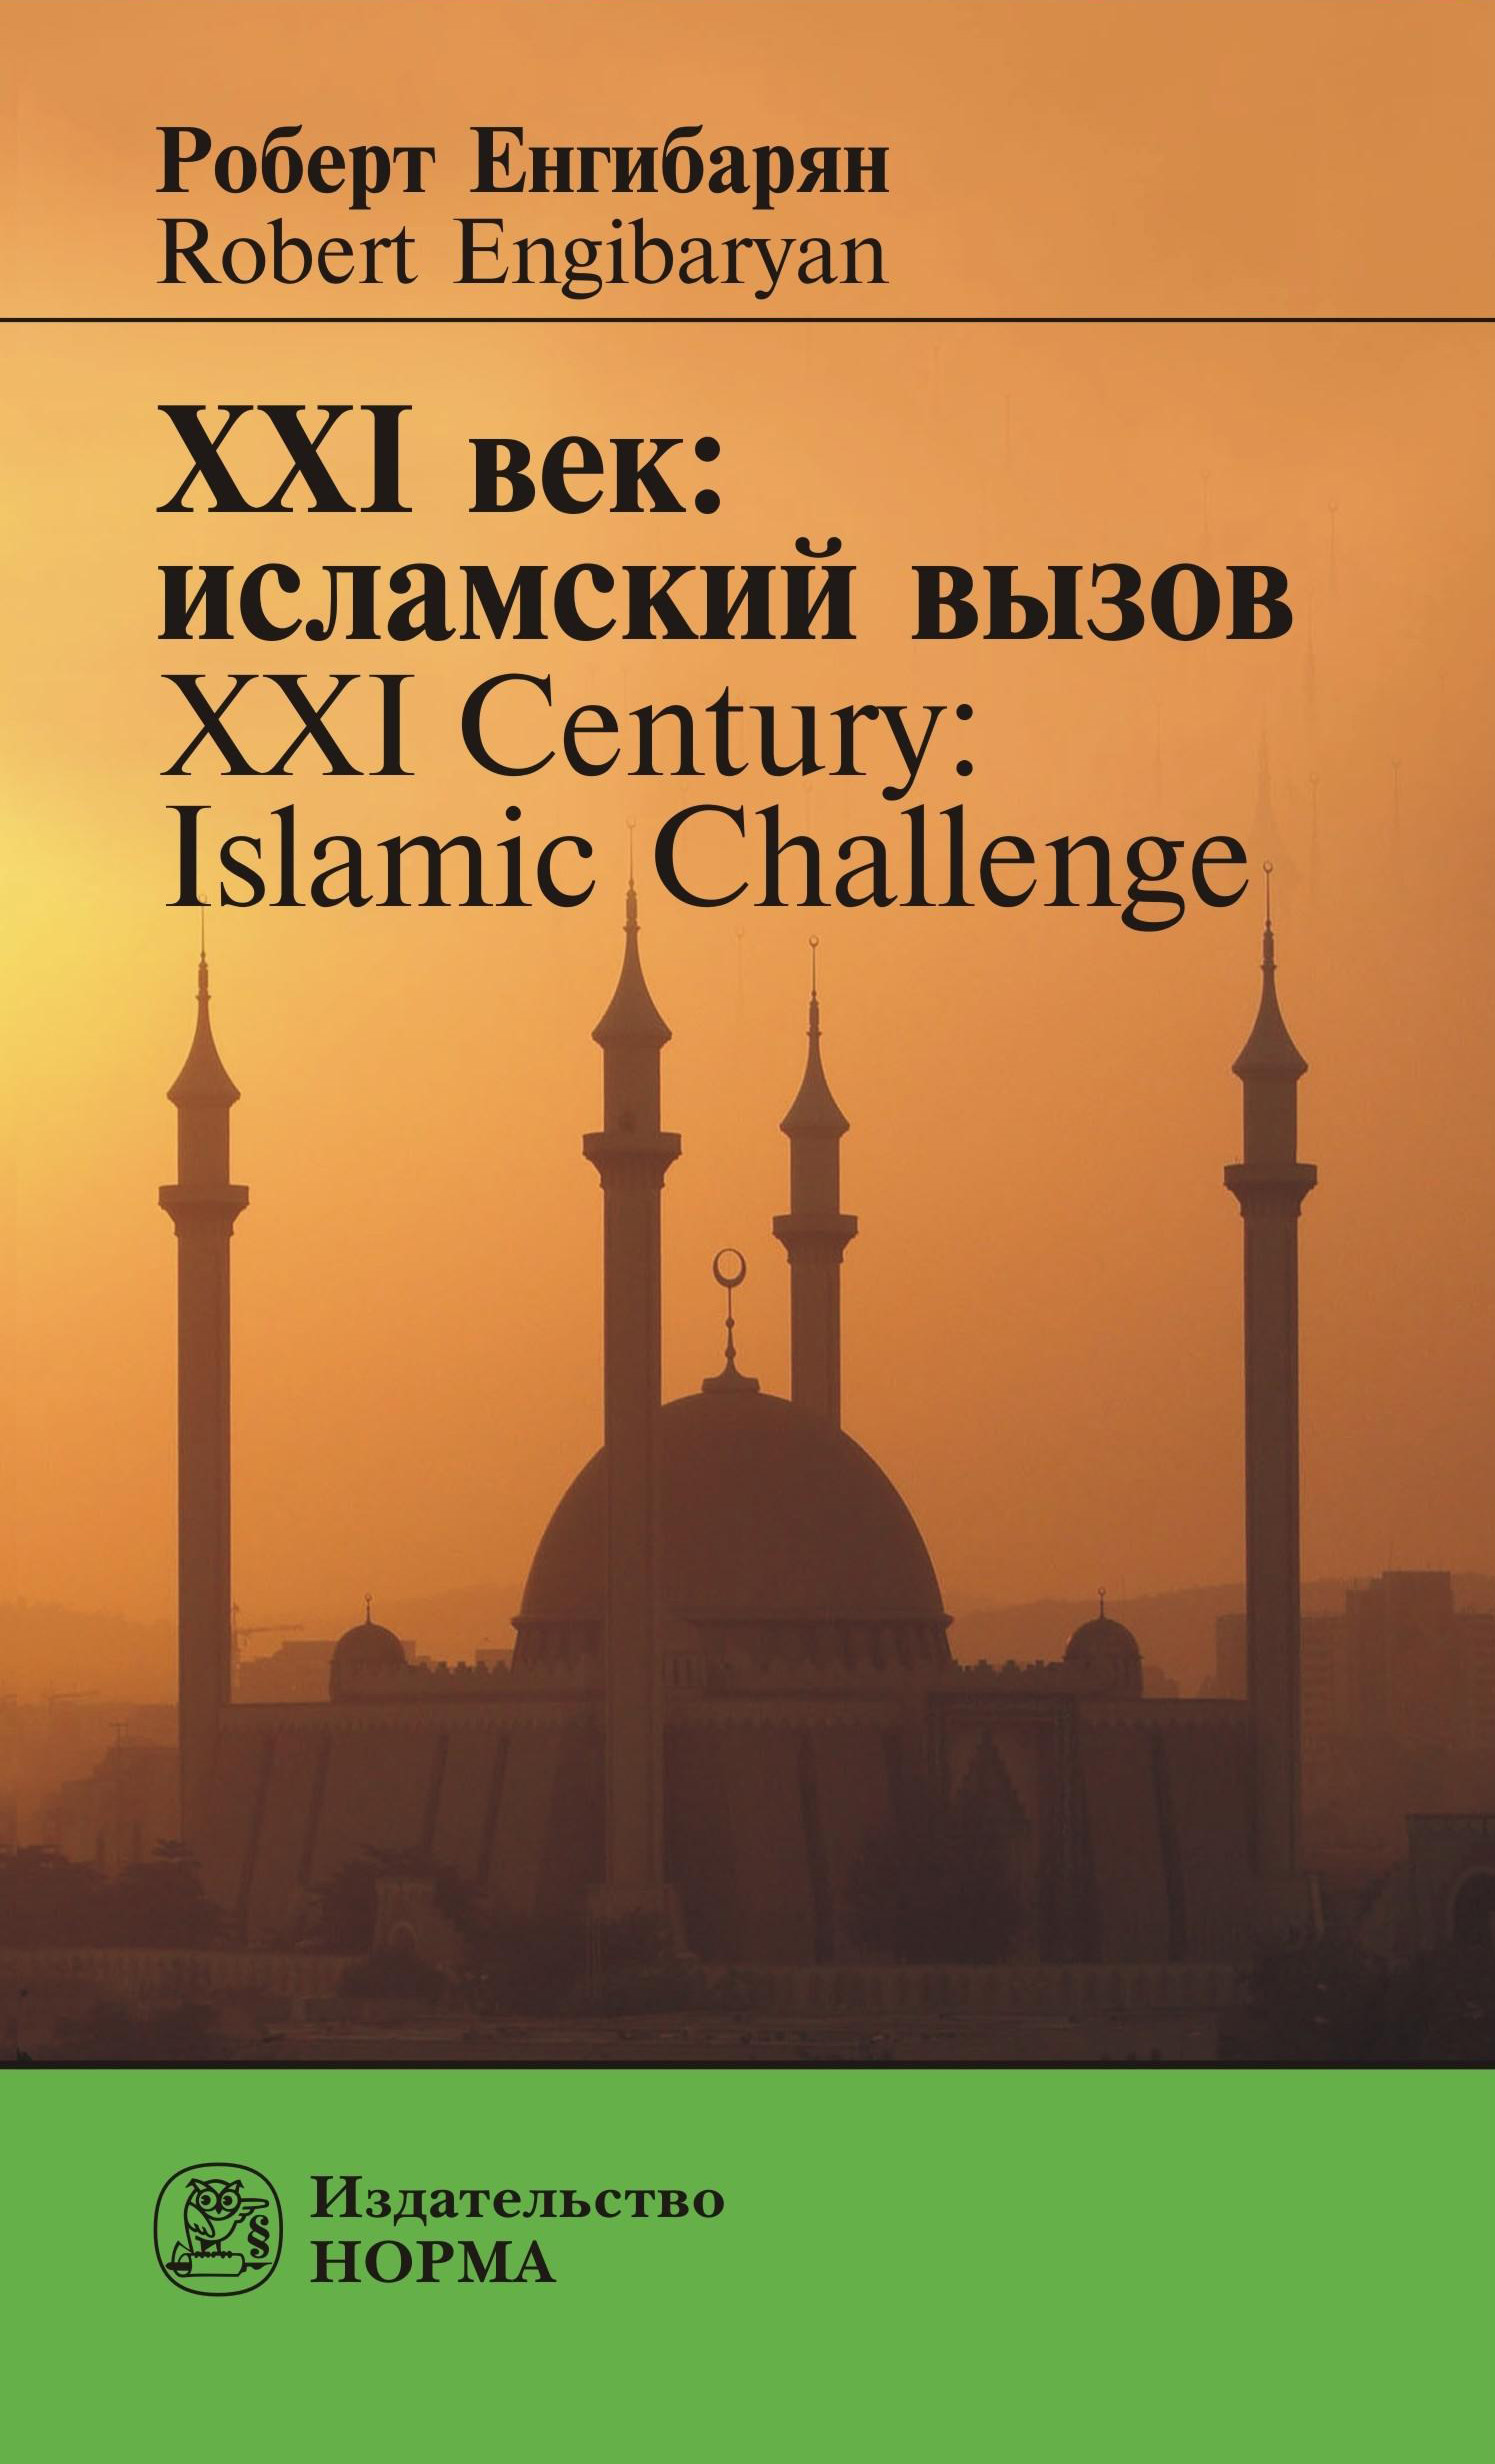 XXIвек: исламский вызов. XXI Century: Islamic Challenge